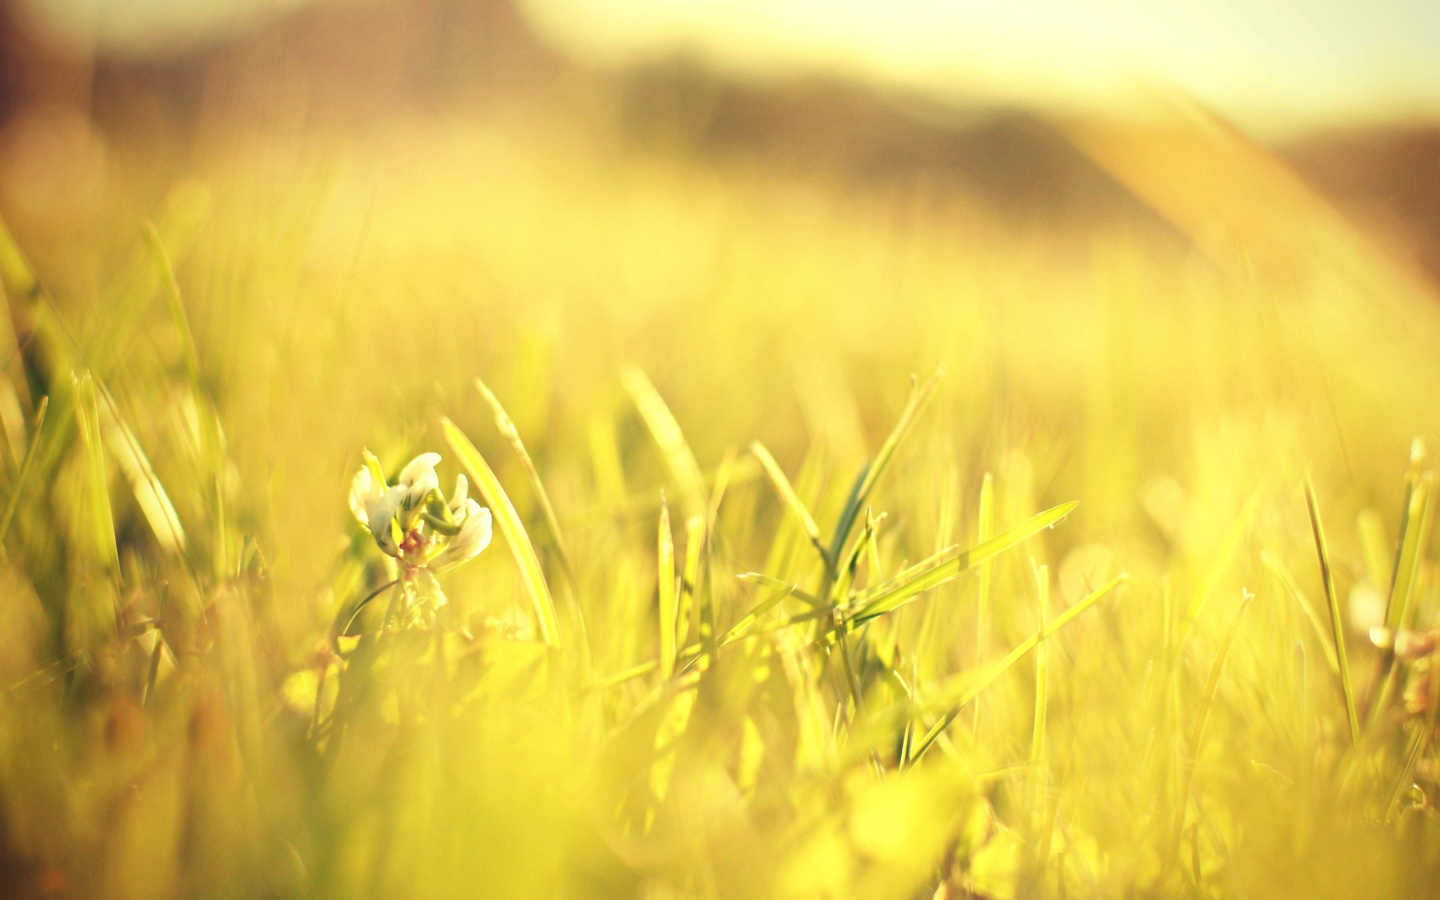 Обои Macro Grass on Meadow 1440x900